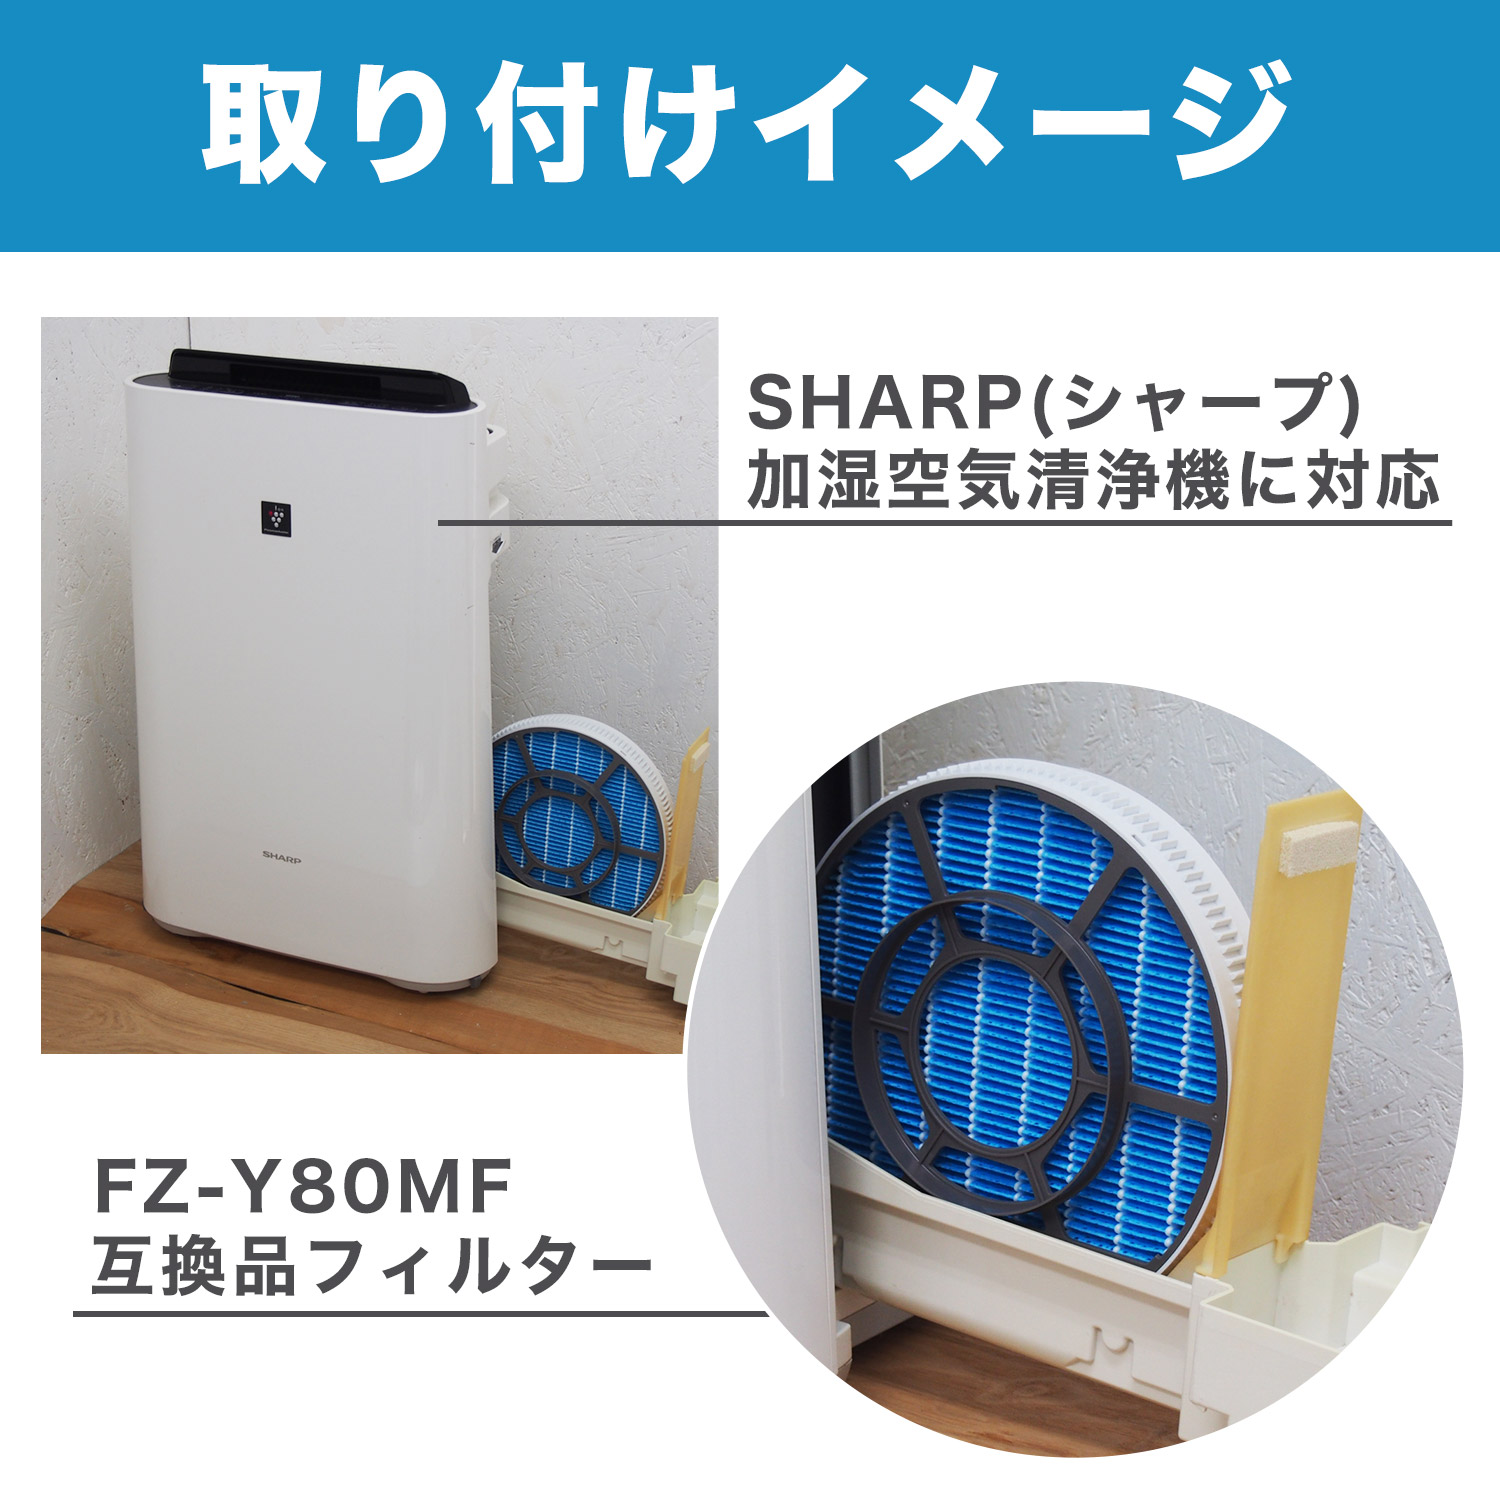 単品購入可 (6個まとめ売り) SHARP 空気清浄機用フィルター FZ-Y30MF